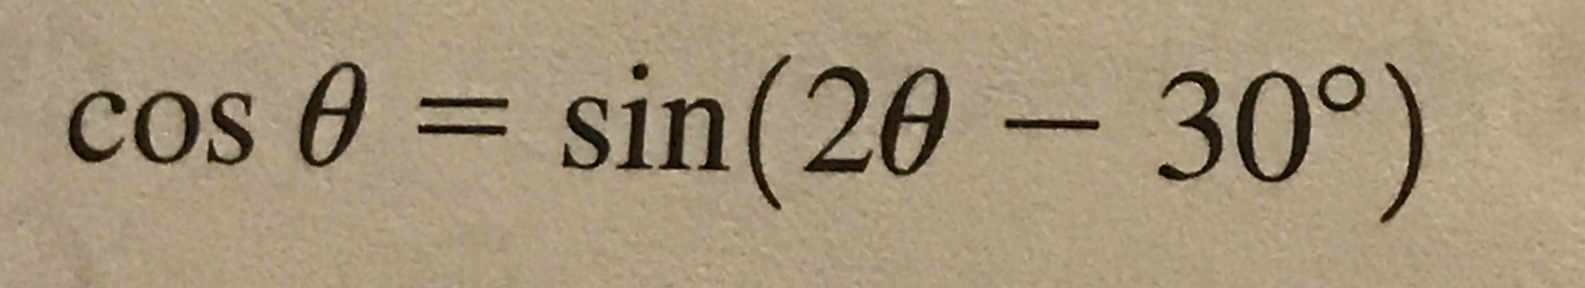 cos θ
sin(2e-30°)
